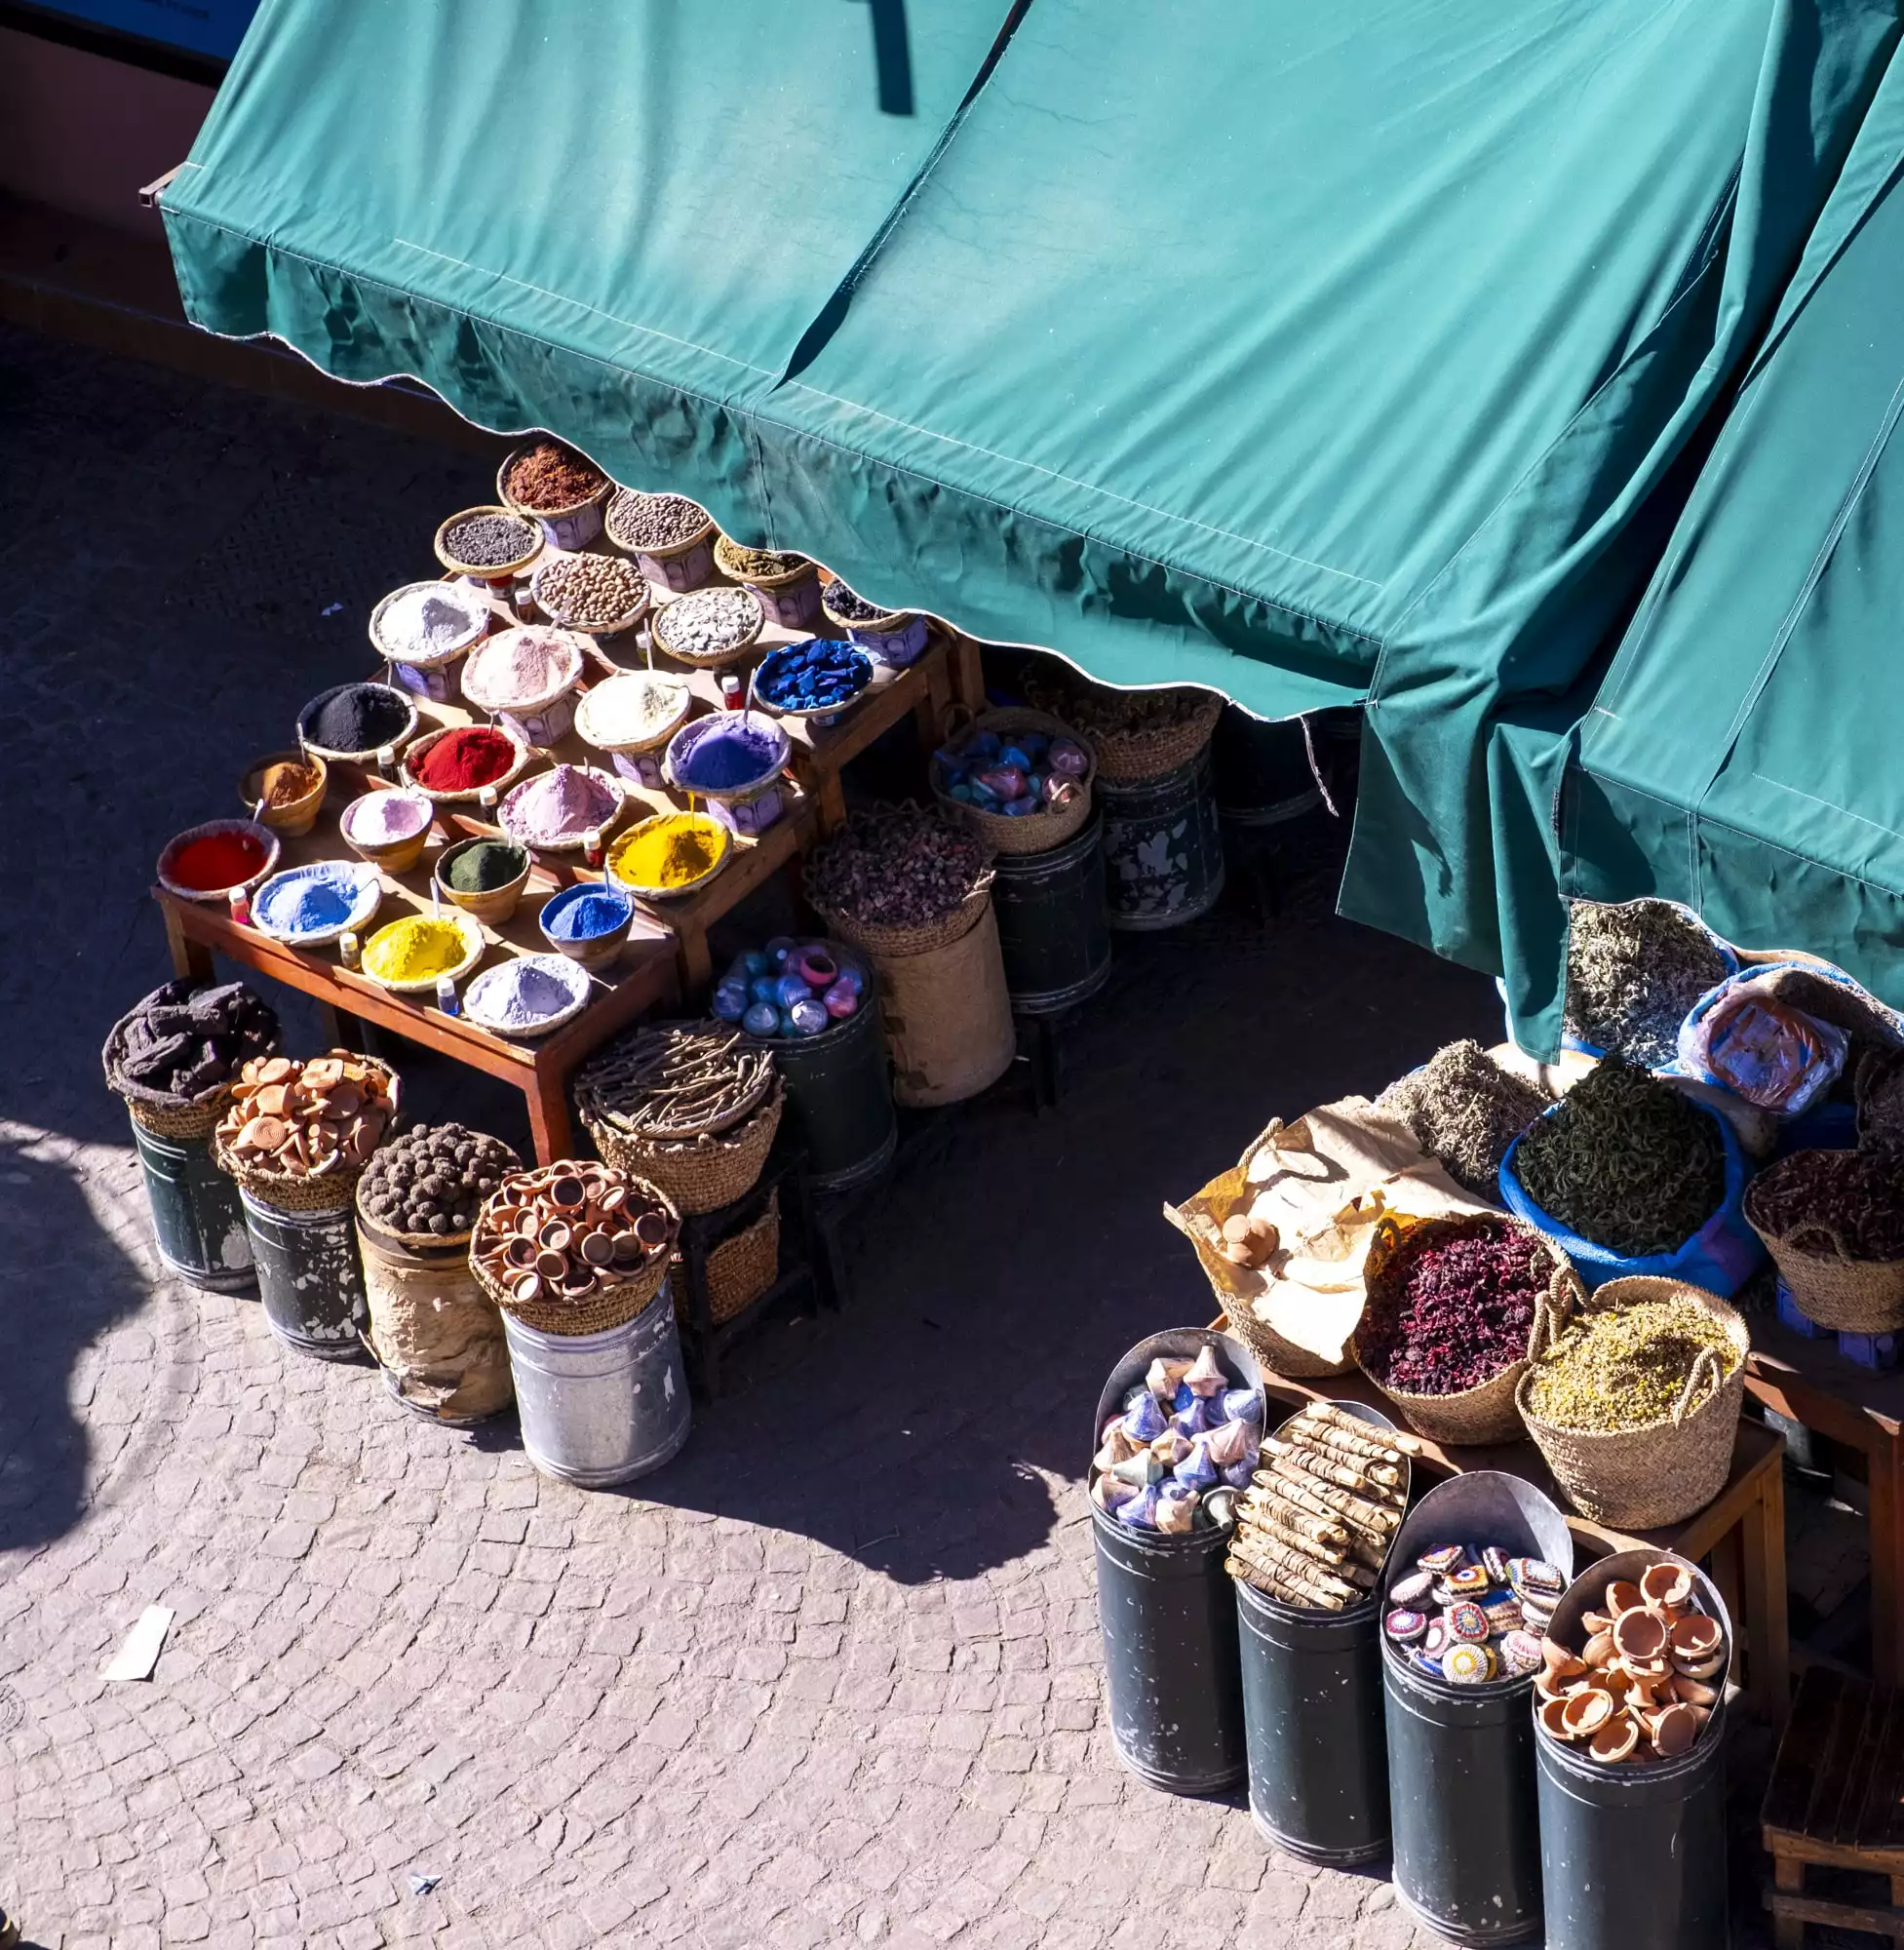 Stedentrip Marrakesh